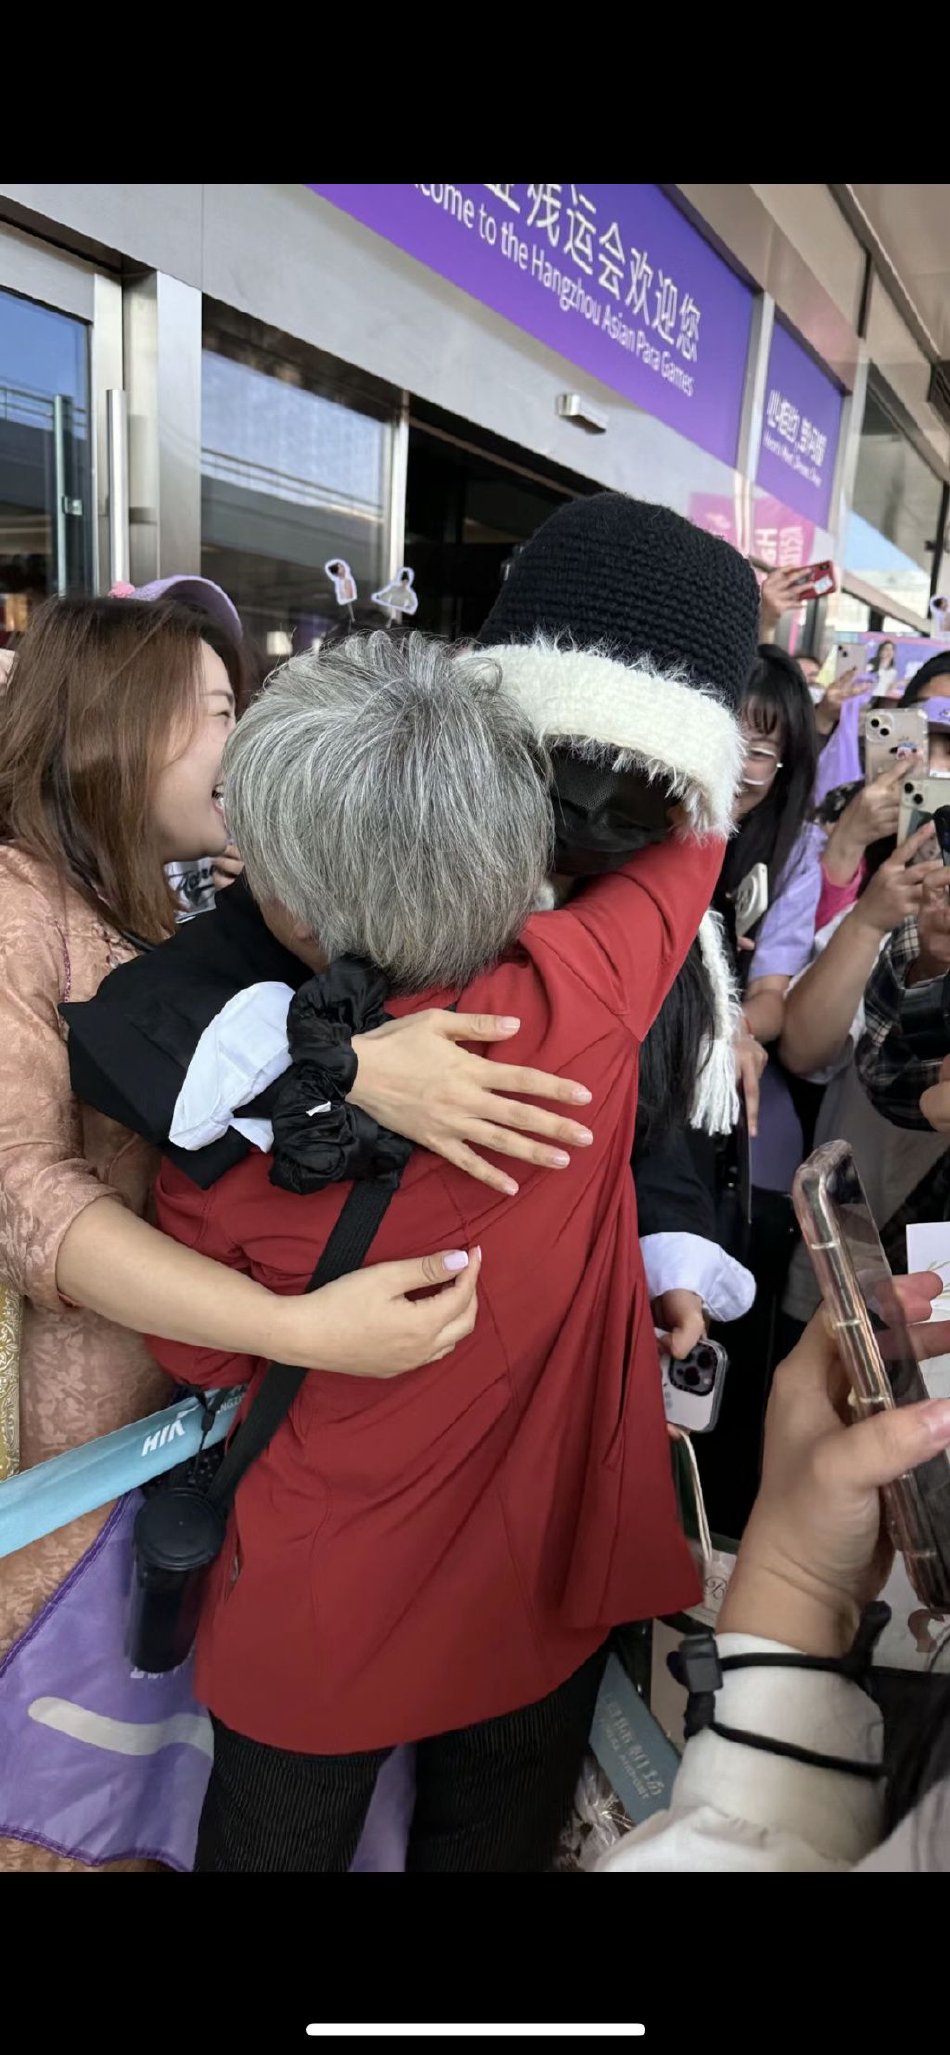 一段粉丝送杨紫的现场视频曝光 杨紫穿越人群拥抱为自己应援的粉丝奶奶